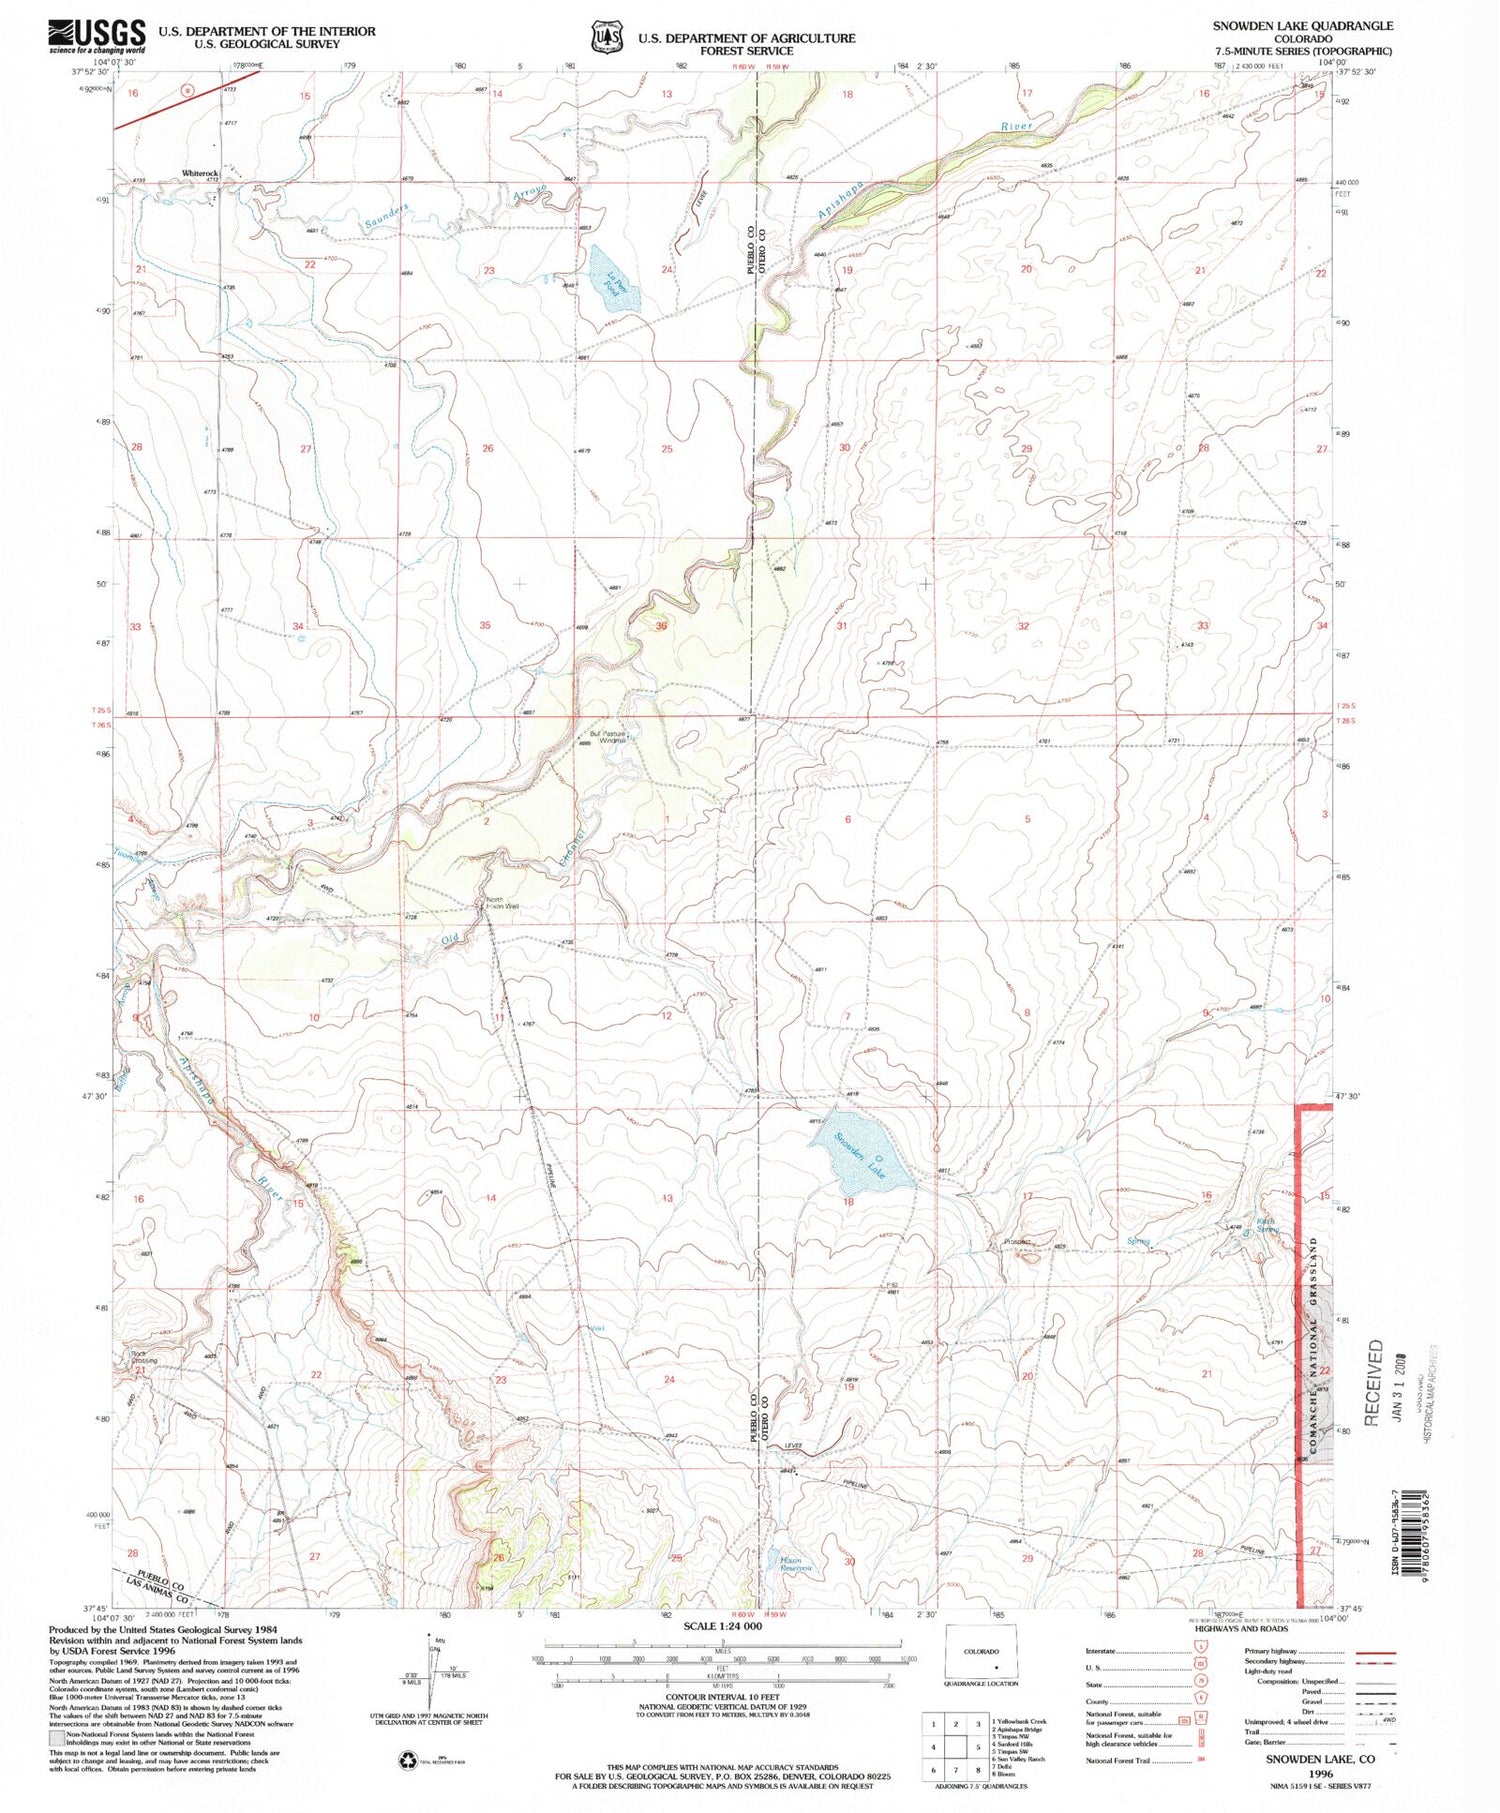 Classic USGS Snowden Lake Colorado 7.5'x7.5' Topo Map Image